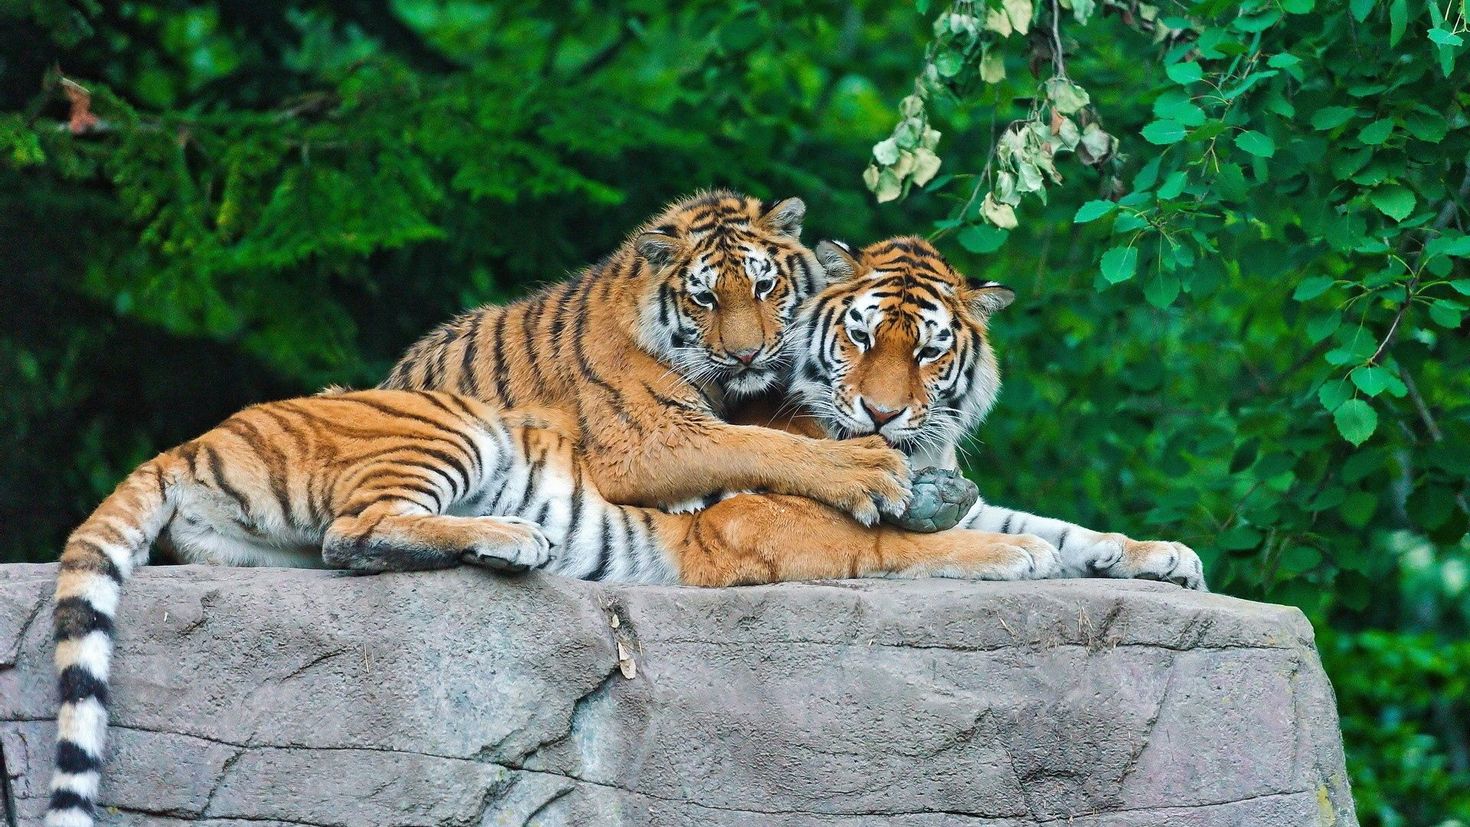 Картинку чтоб поставить. Амурский (Уссурийский) тигр. Тигры Прайд. Тигр с тигренком. Красивый тигр.